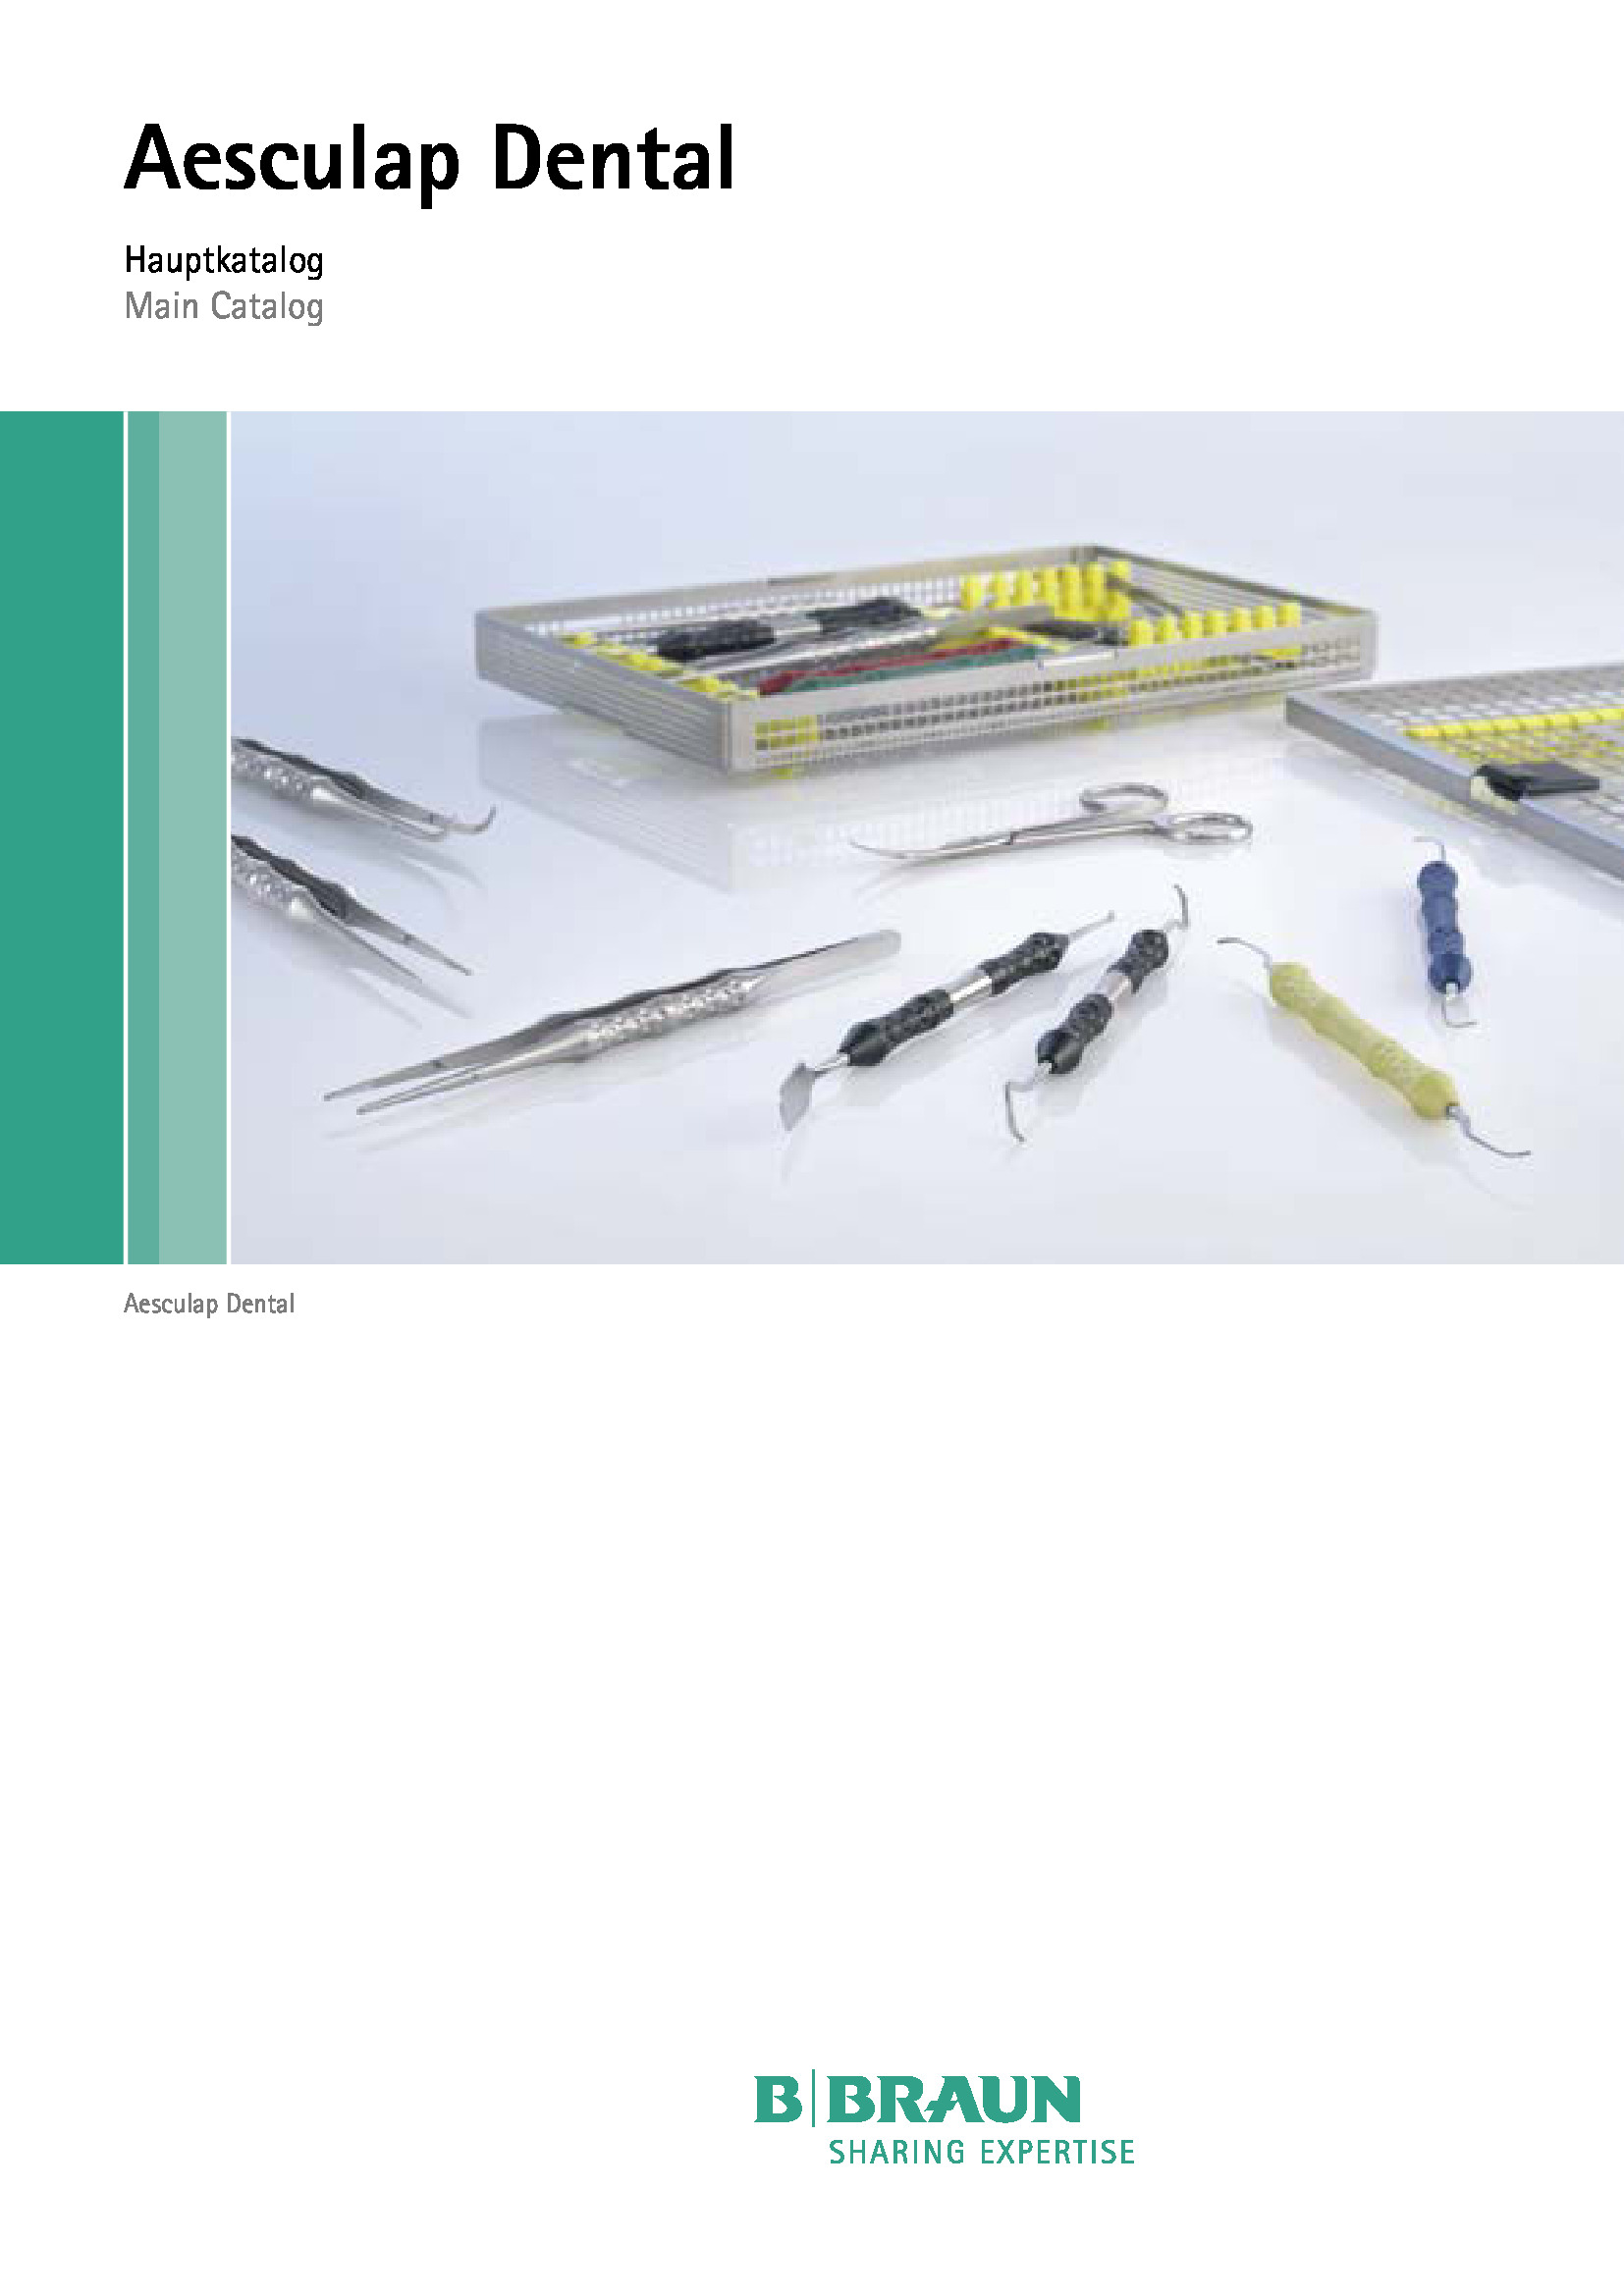 Обложка дополнительного файла для Инструменты для имплантологии, ERGOPLANT, базовый имплантологический набор